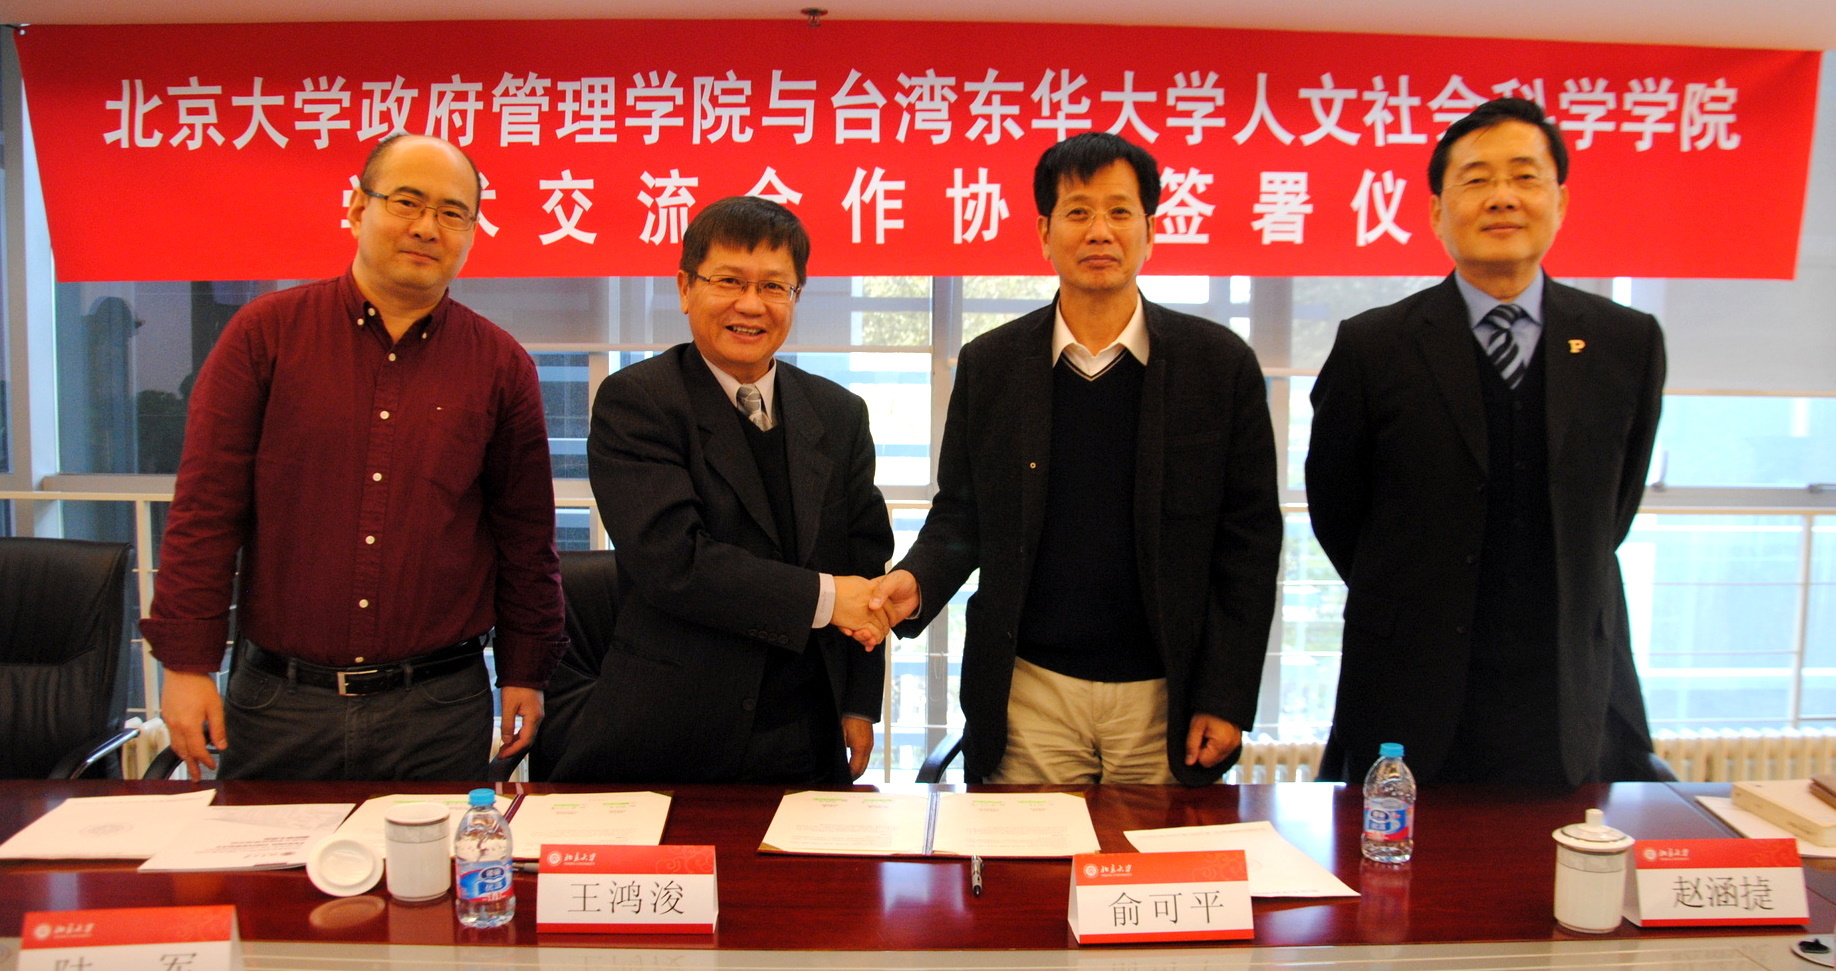 人文社會科學學院與北京大學政府管理學院簽約儀式